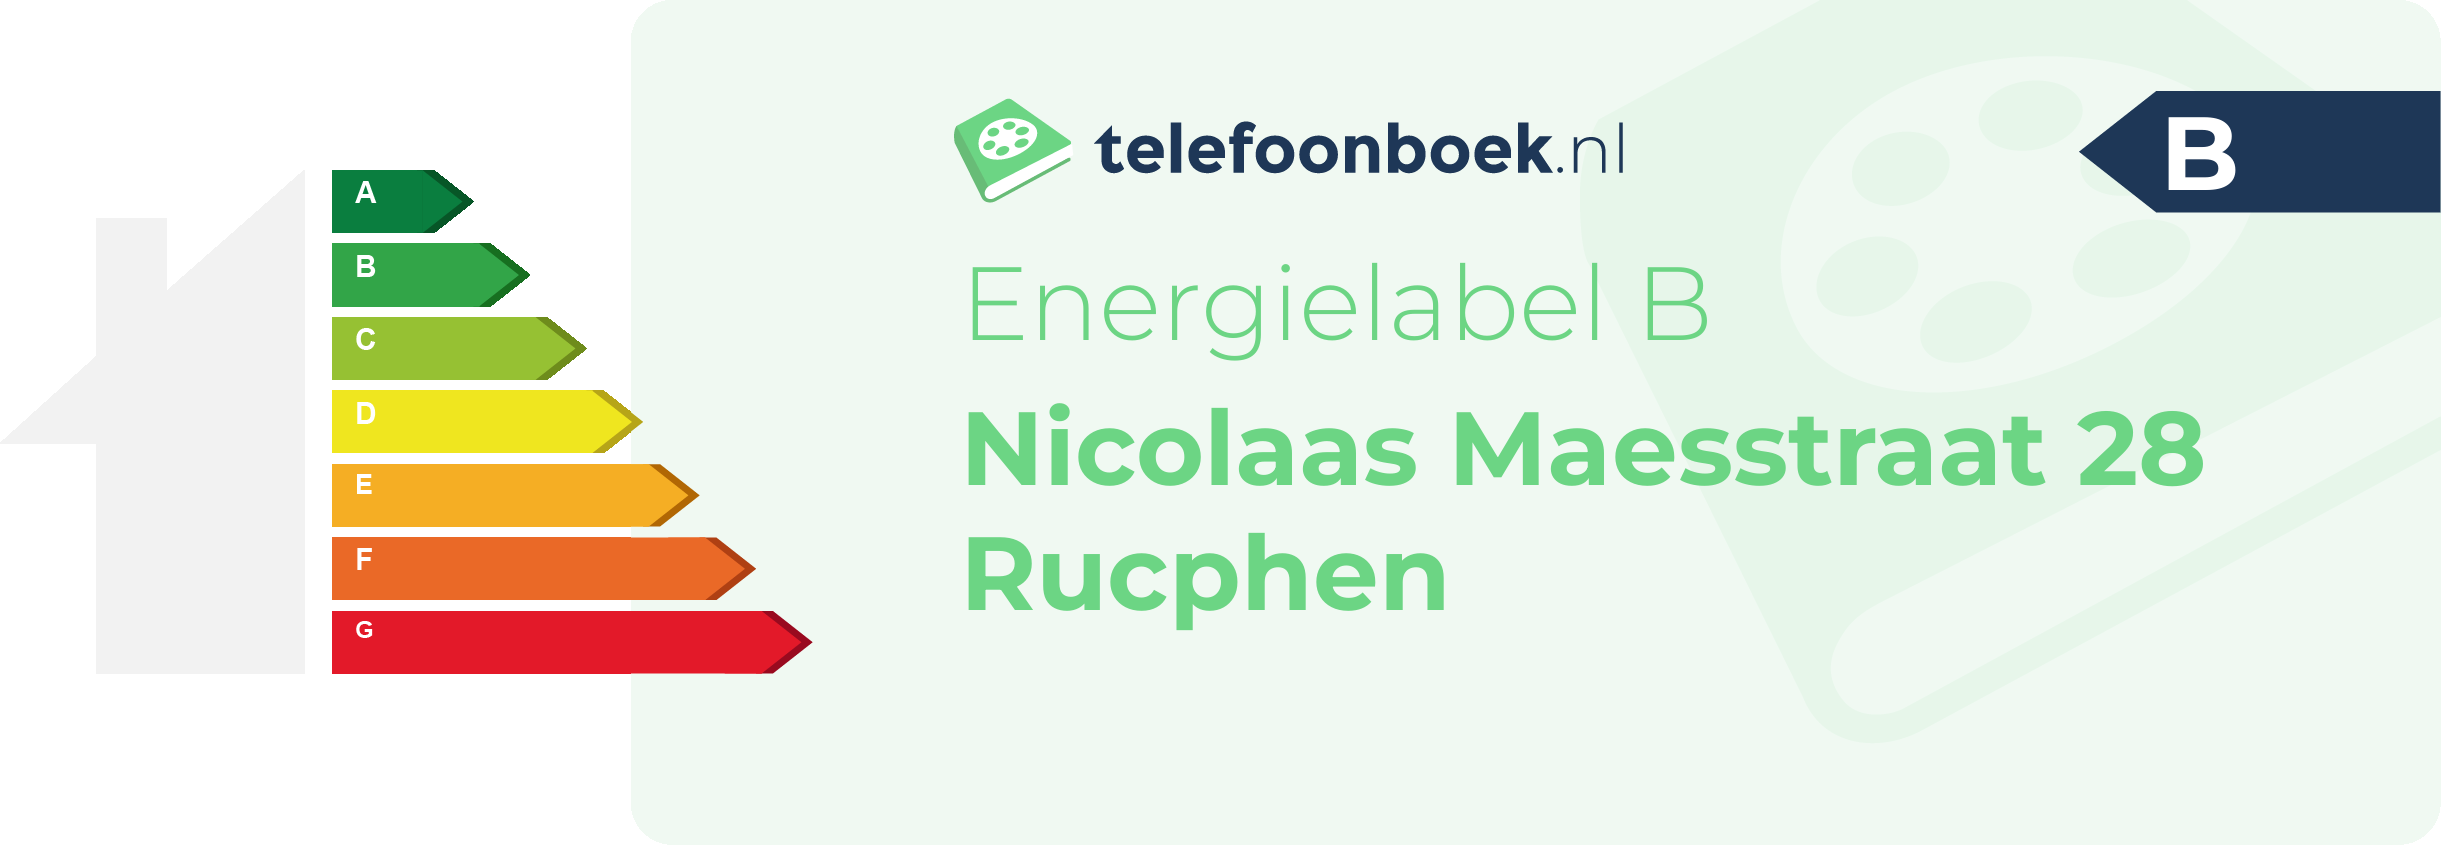 Energielabel Nicolaas Maesstraat 28 Rucphen